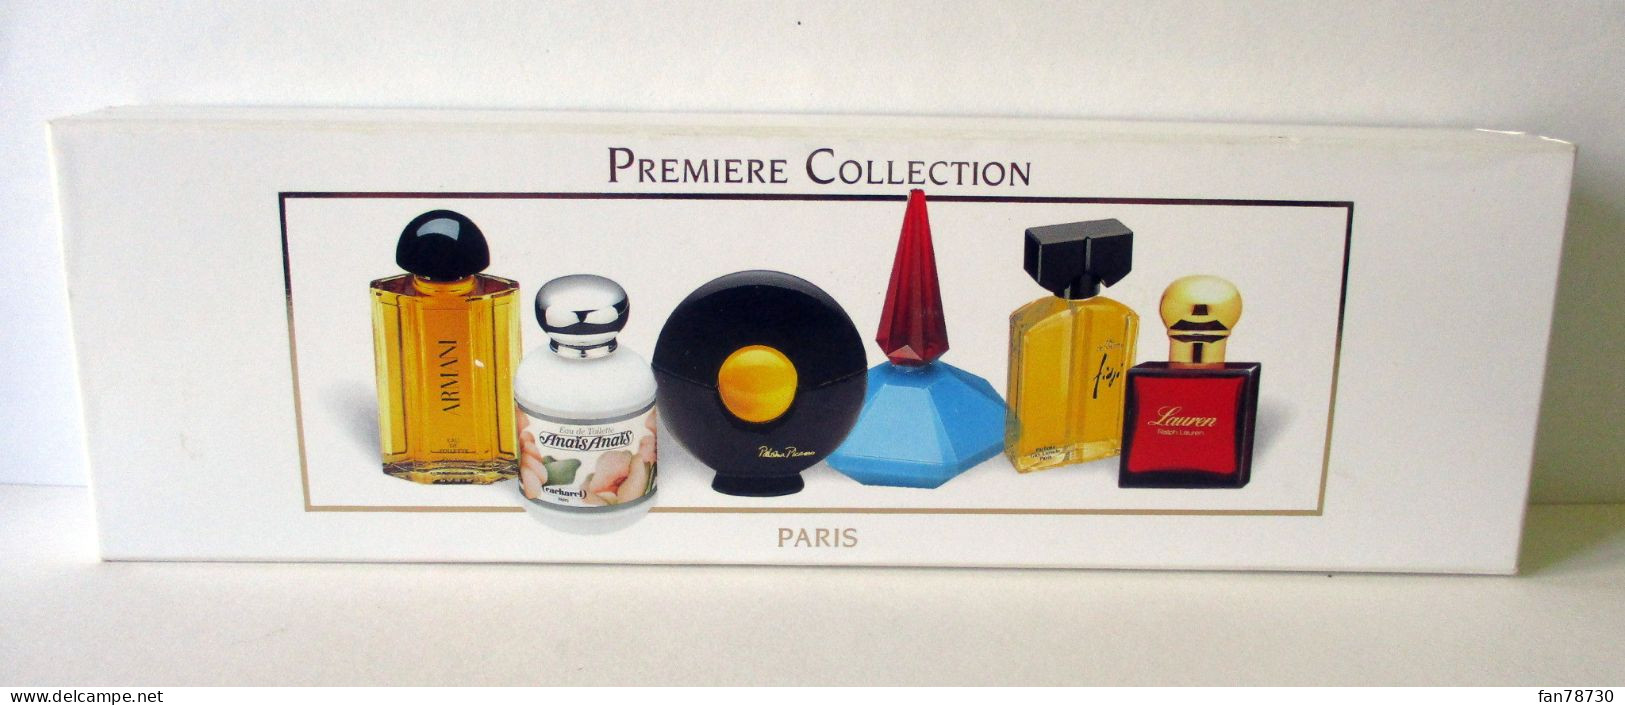 Miniatures X 6 "Première Collection" Paris - Prestige Et Collections - FRAIS DU SITE DEDUITS - Miniatures Femmes (avec Boite)